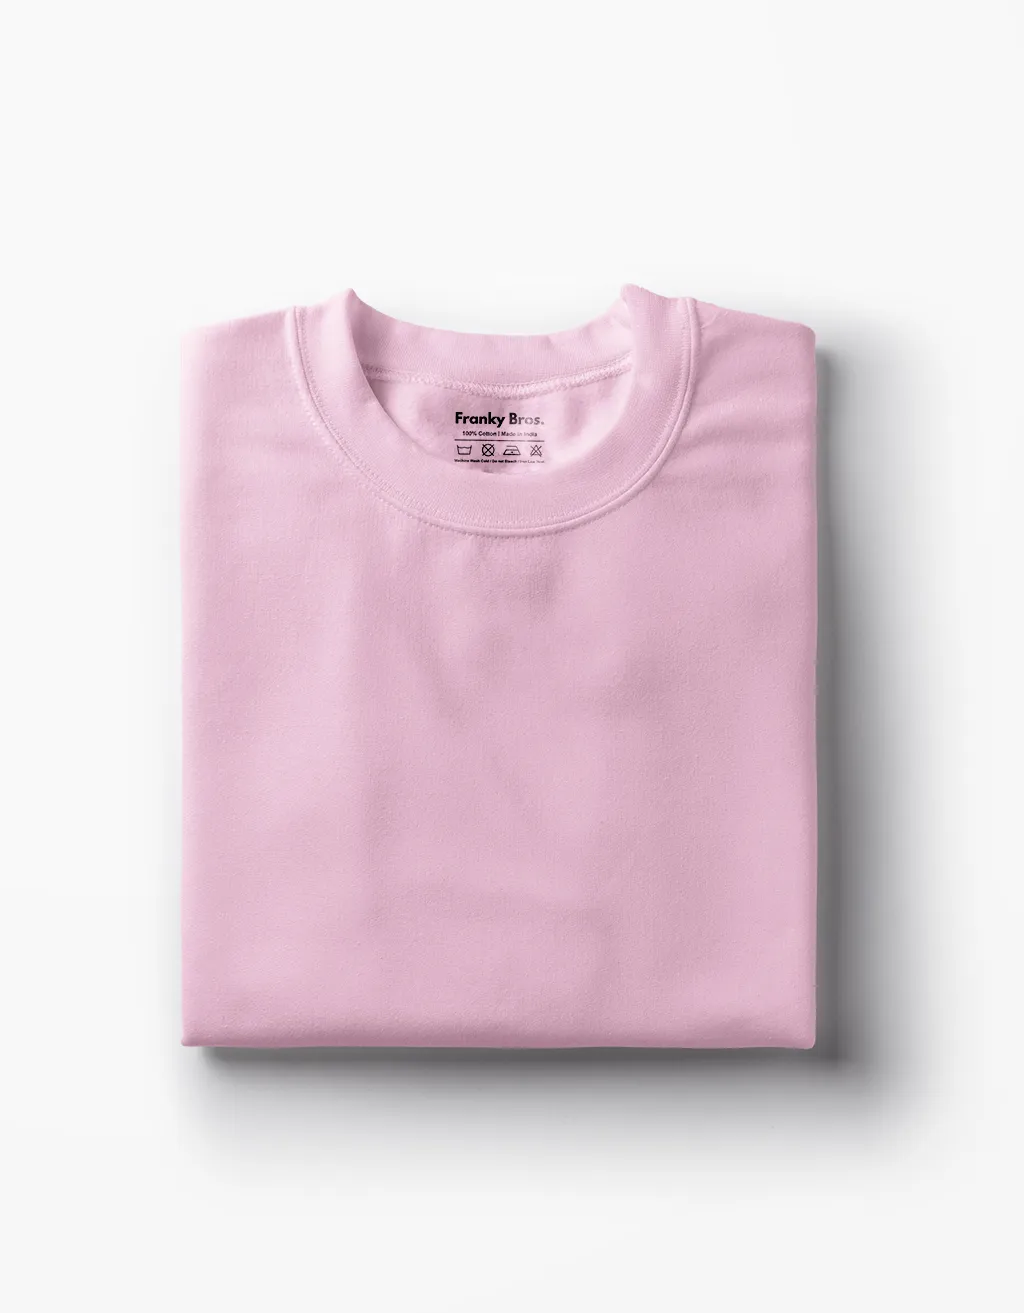 Plain pink t shirt, Women's t shirt online